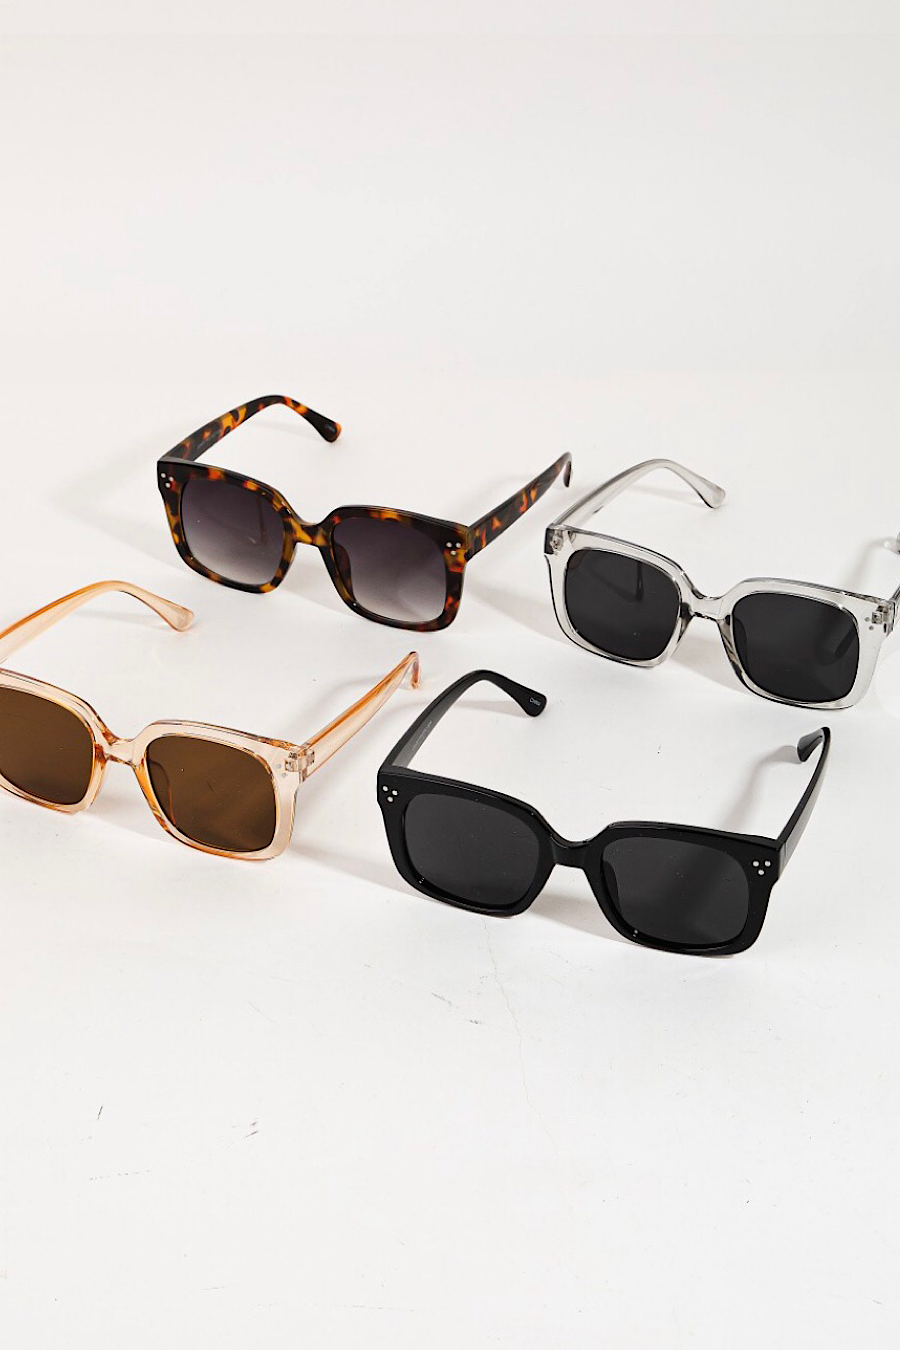 Acetate Wayfarer Sunglasses in Several Colors!